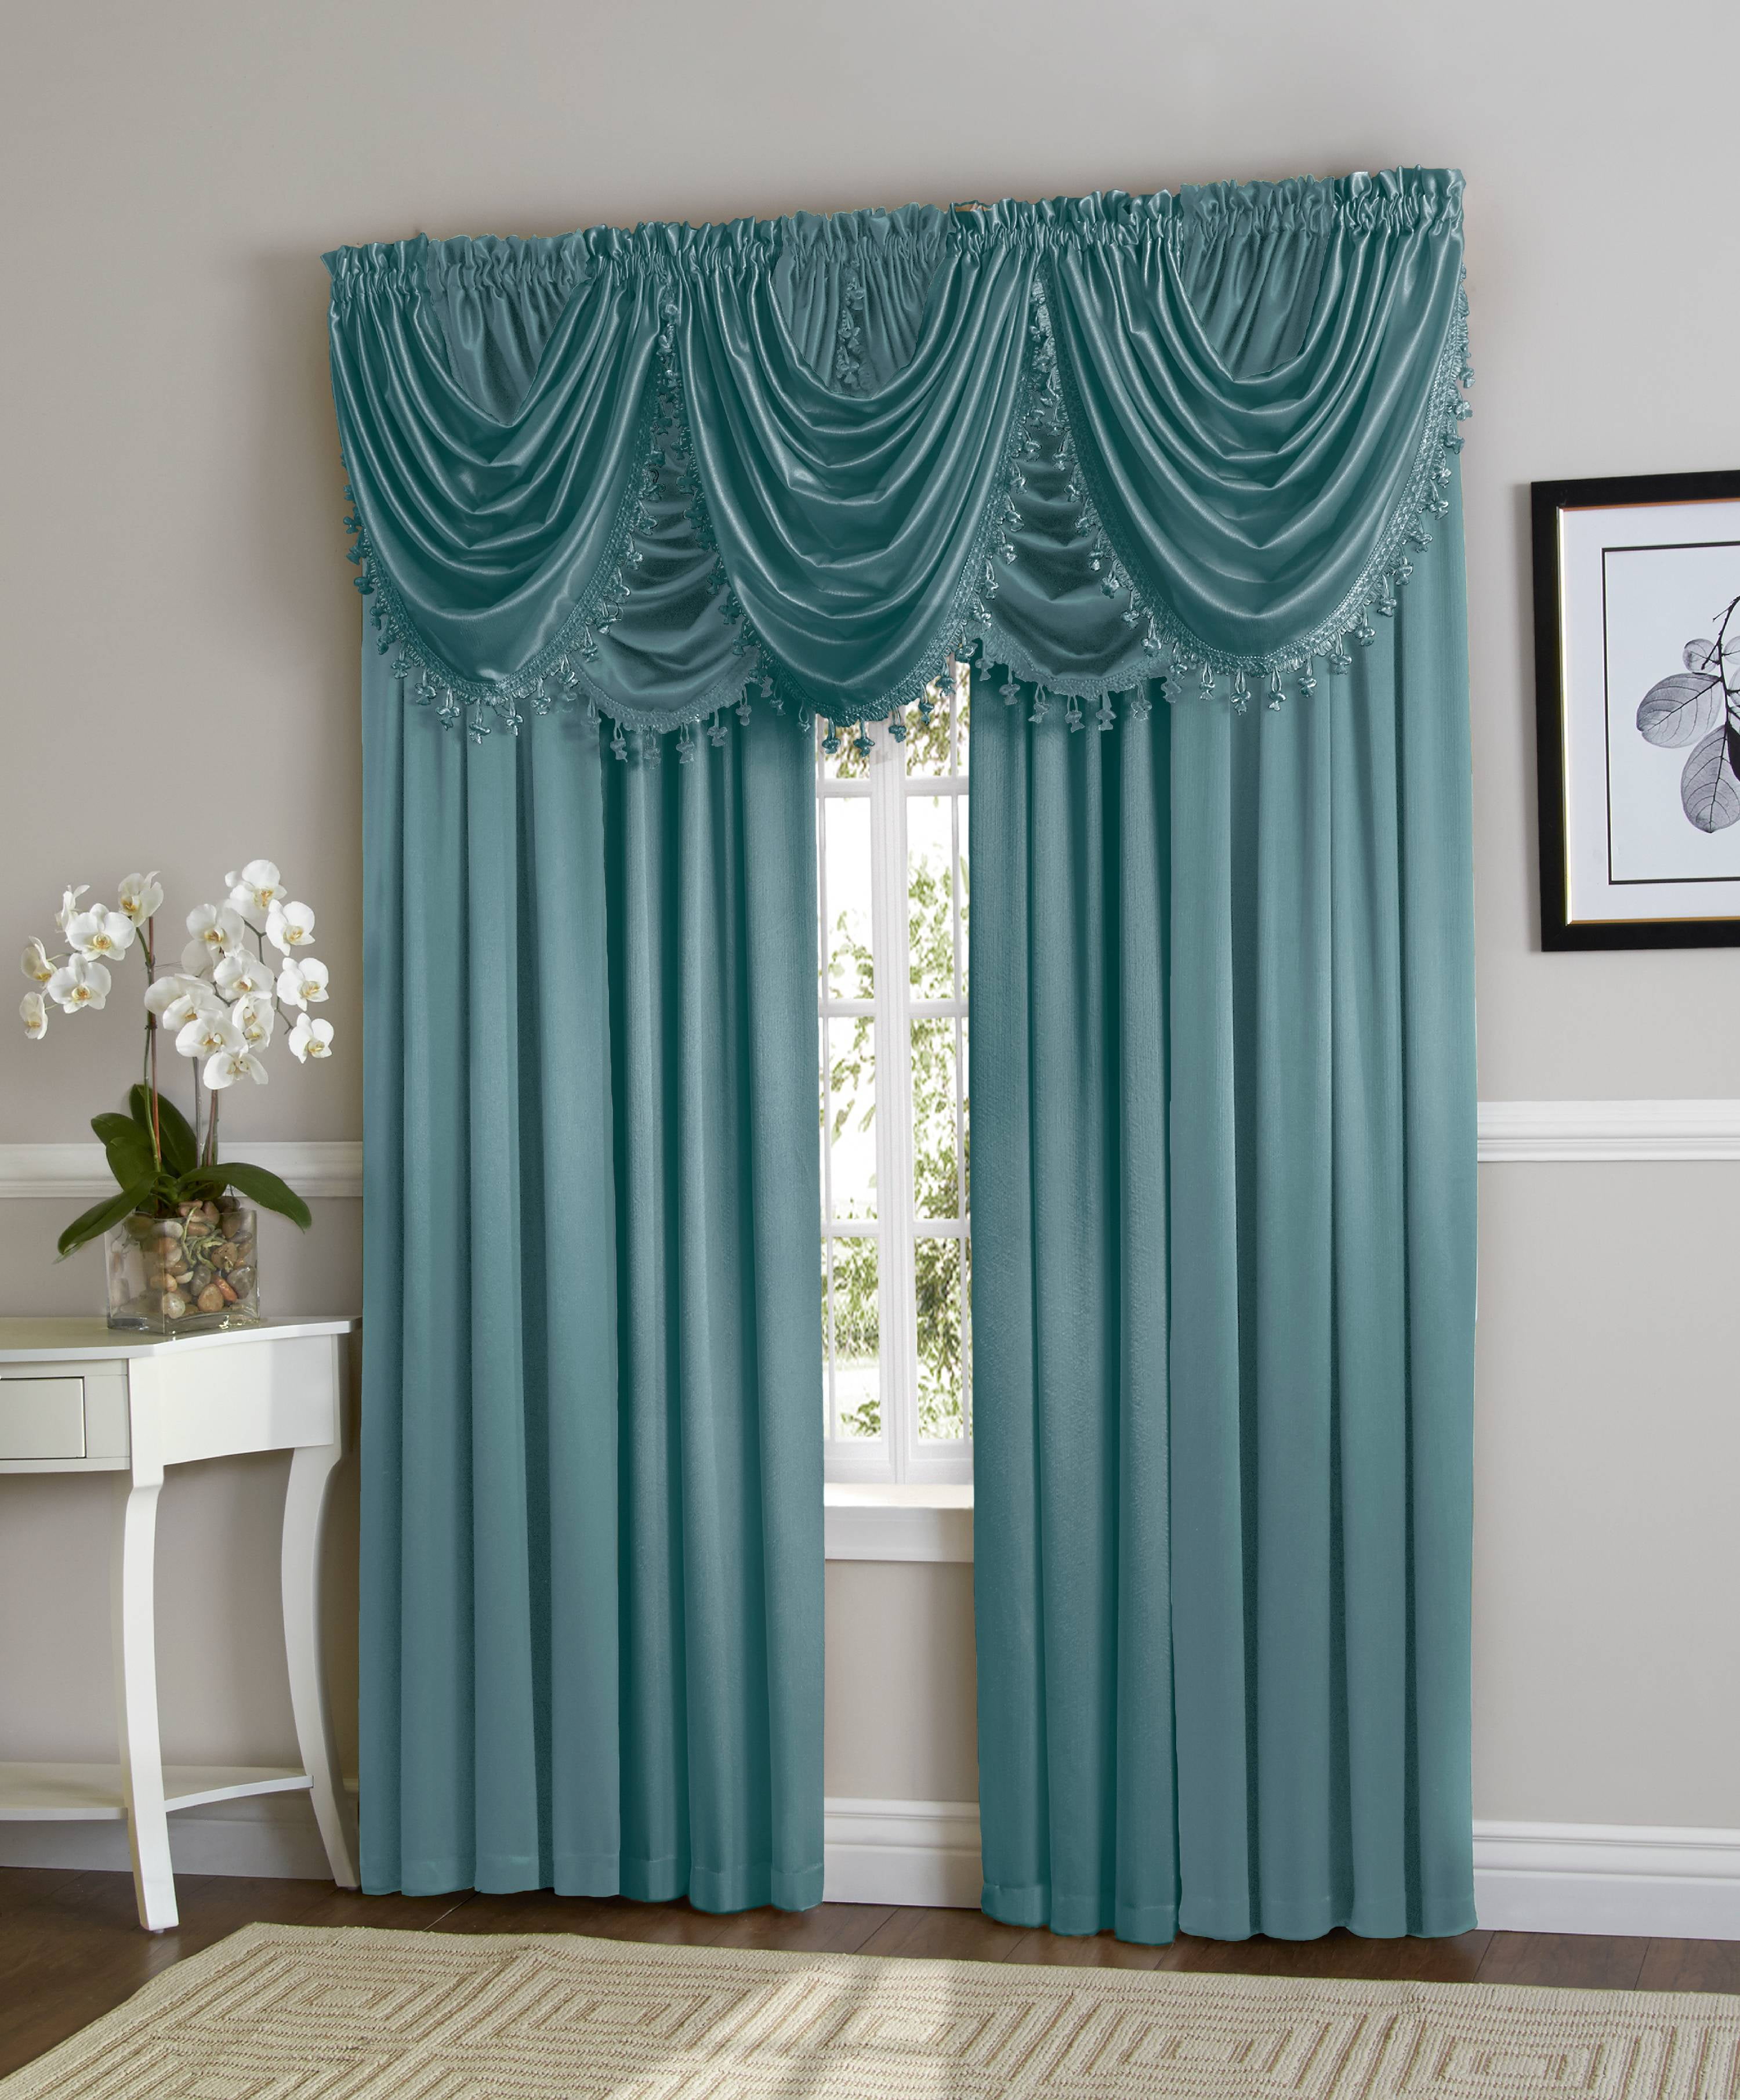 curtains curtains curtains